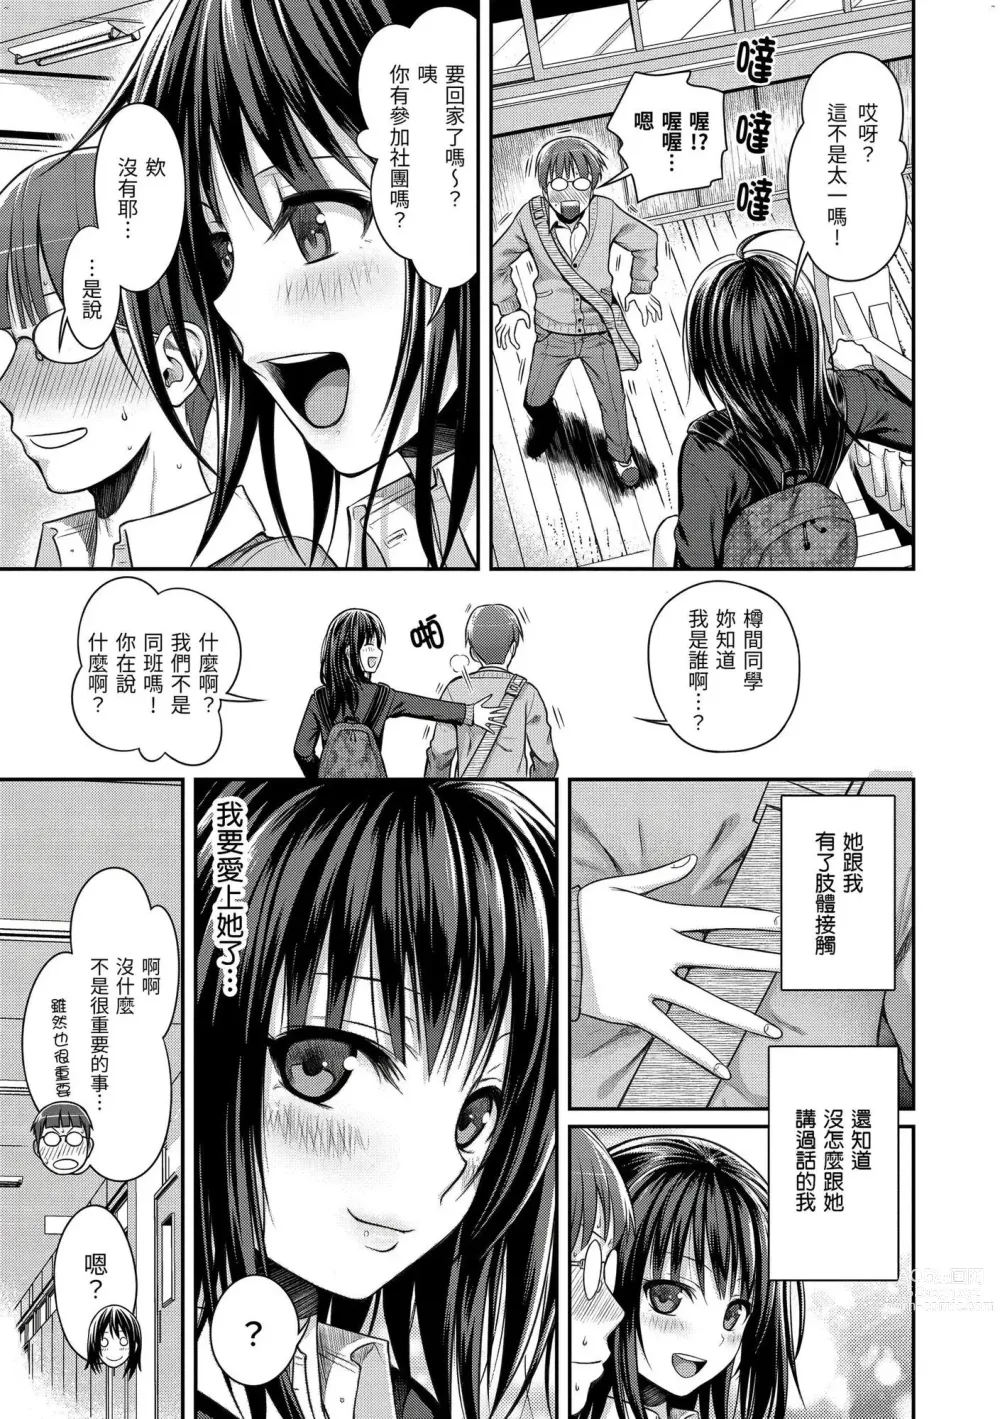 Page 9 of manga ユイユルイ (uncensored)